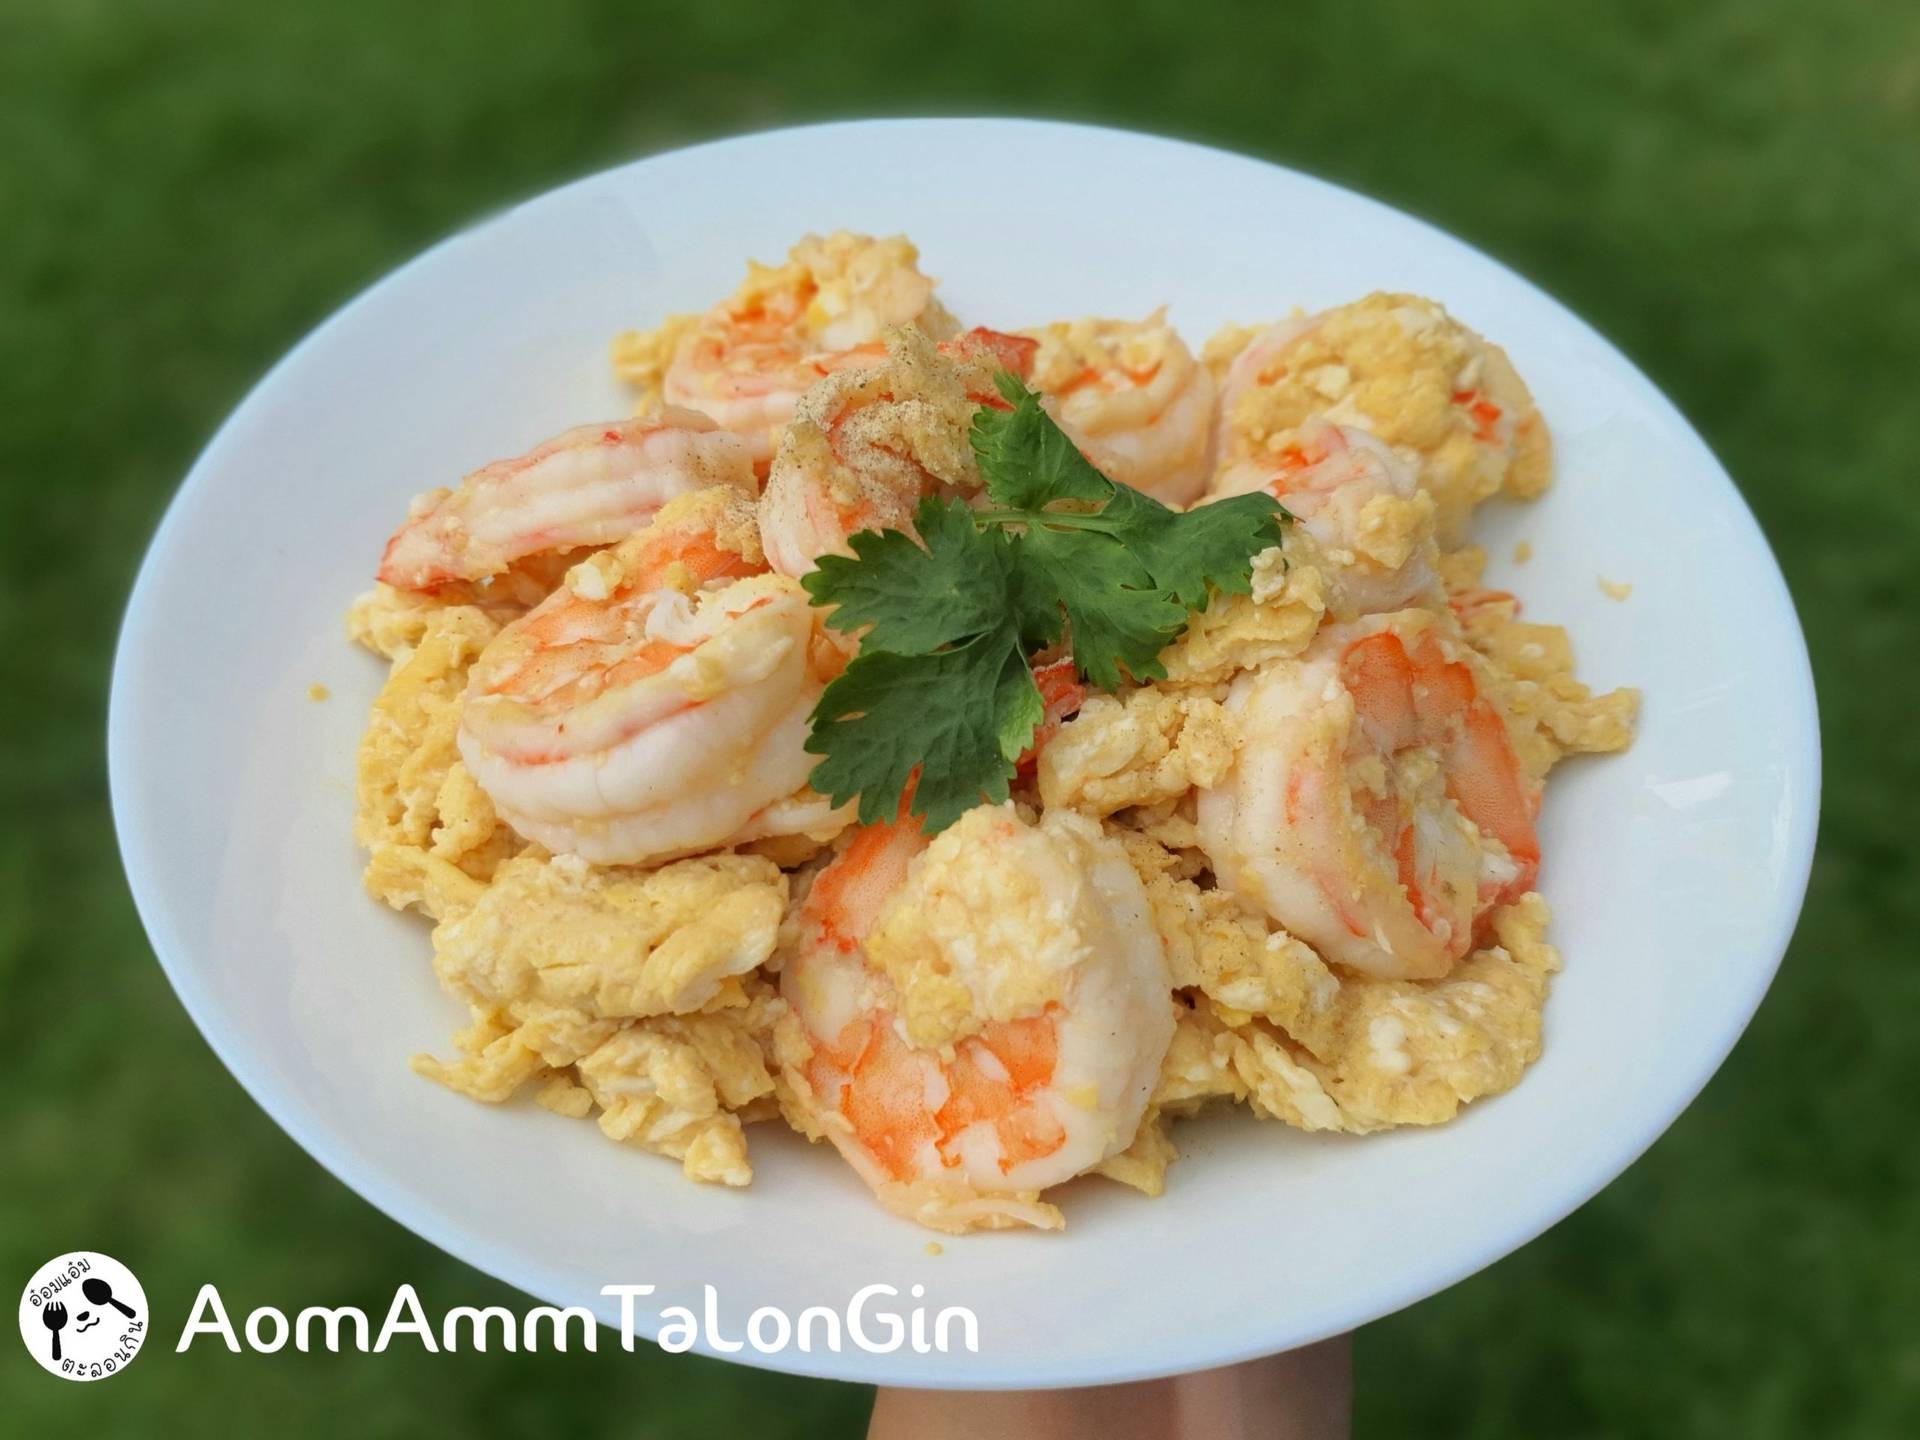 สูตร ไข่ขยี้กุ้งพริกน้ำปลาโลว์โซเดียม 🥚🦐 พร้อมวิธีทำโดย AomAmmTaLonGin